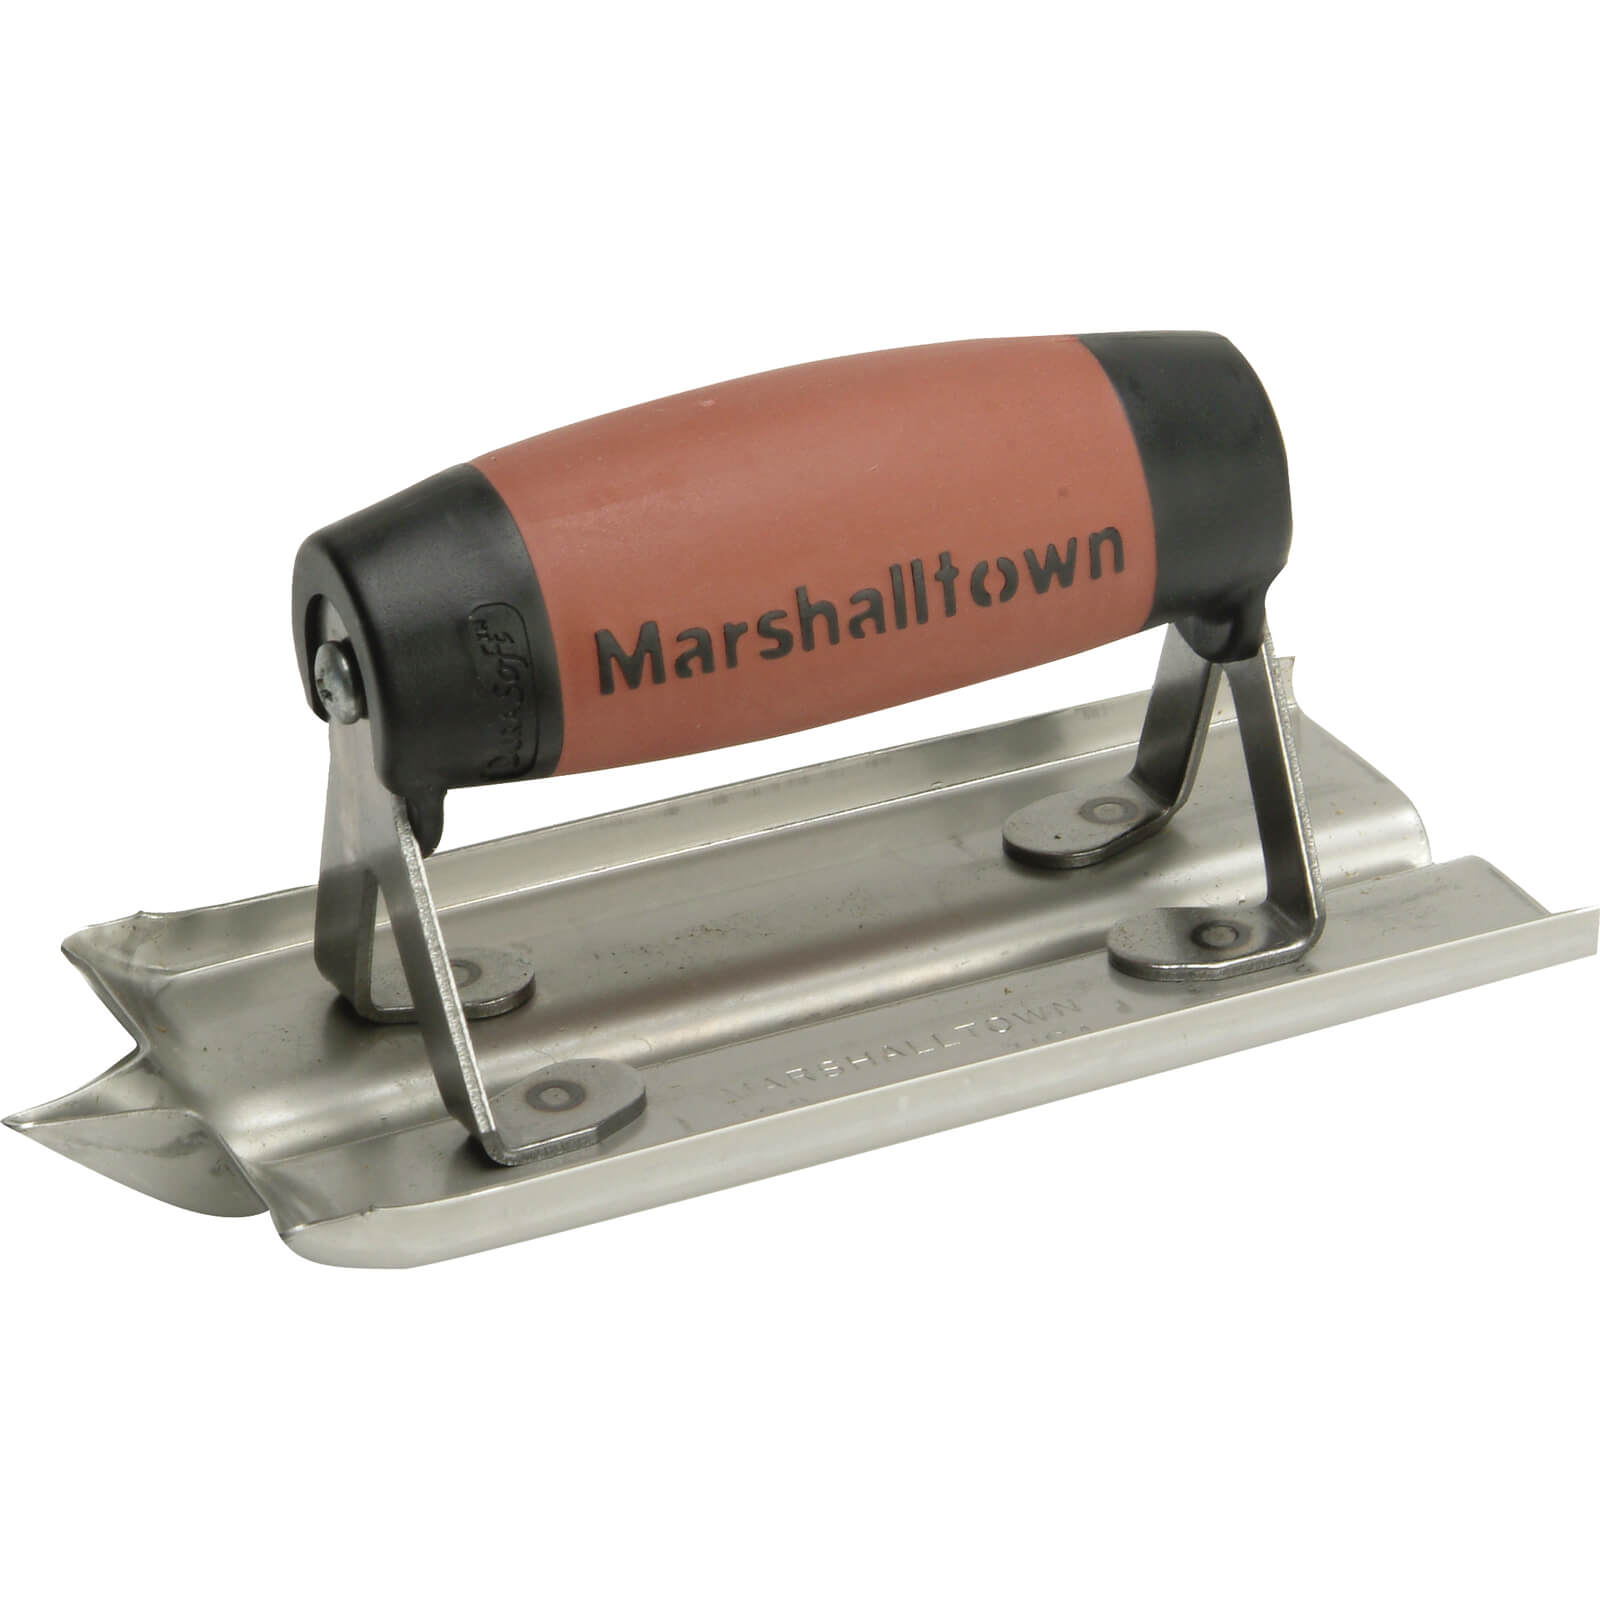 Marshalltown M180D Durasoft Stainless Steel Cement Edger 6X3"